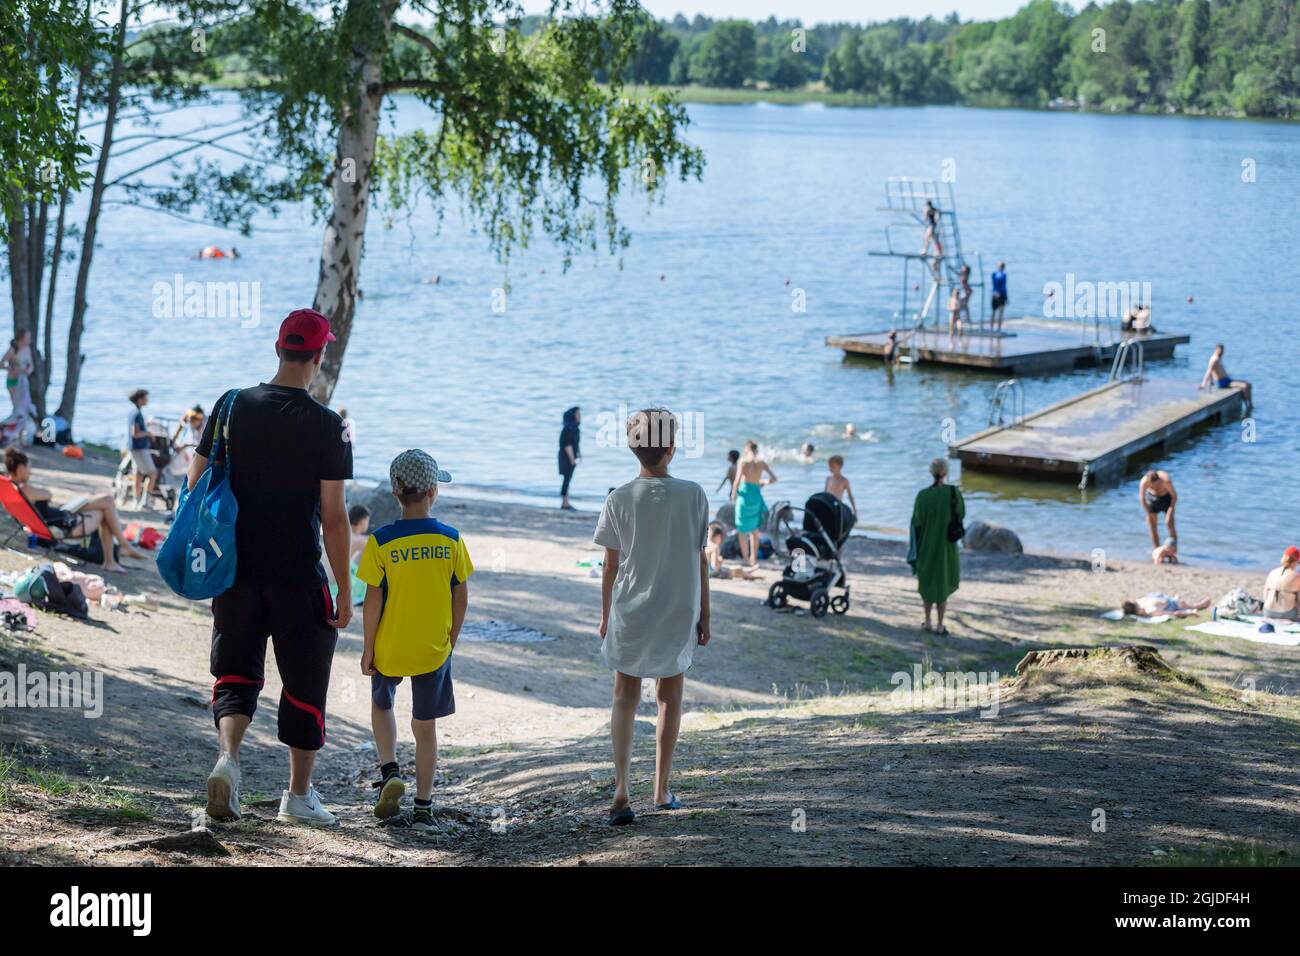 Les gens apprécient les températures estivales à la plage de Malarhojdsbadet, au lac de Malaren à Stockholm, en Suède, le 23 juin 2020. Les températures devraient dépasser 30 degrés Celsius au cours des prochains jours. Photo: Stina Stjernkvist / TT / code 11610 *** SUÈDE OUT *** Banque D'Images